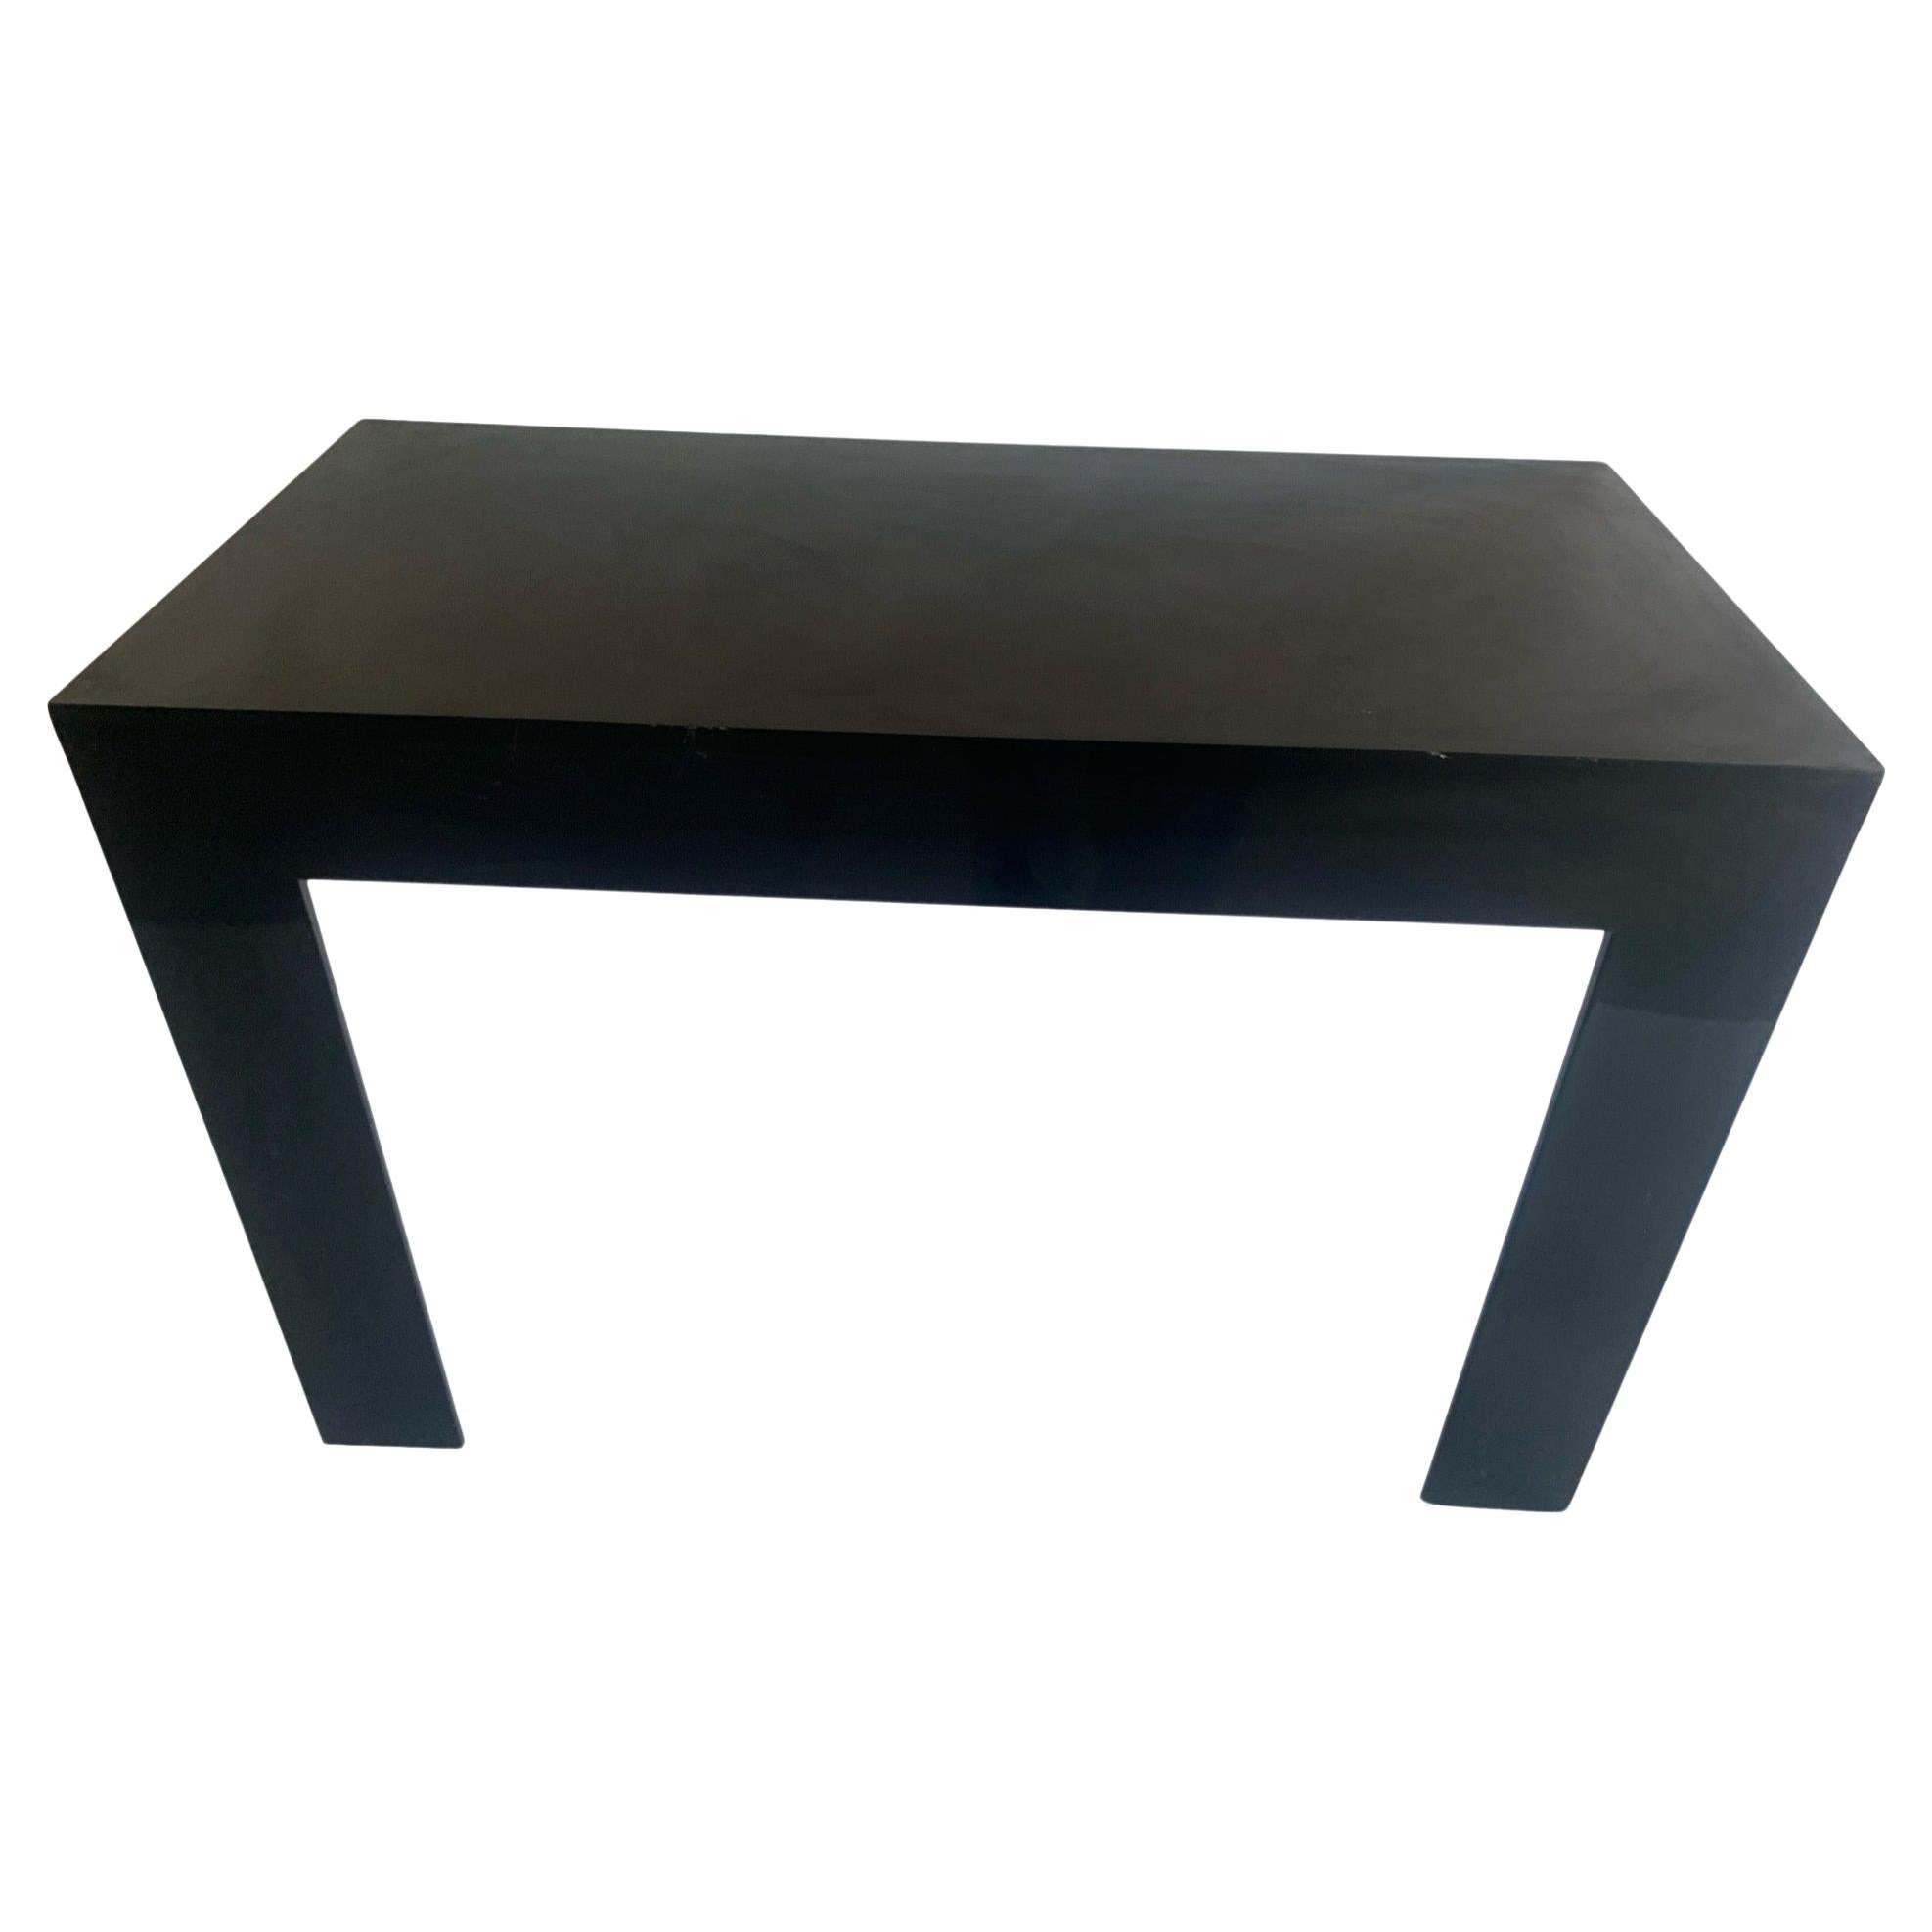 Table console noire Syroco de style Parsons...Table d'appoint à deux pieds MCM à fixation murale